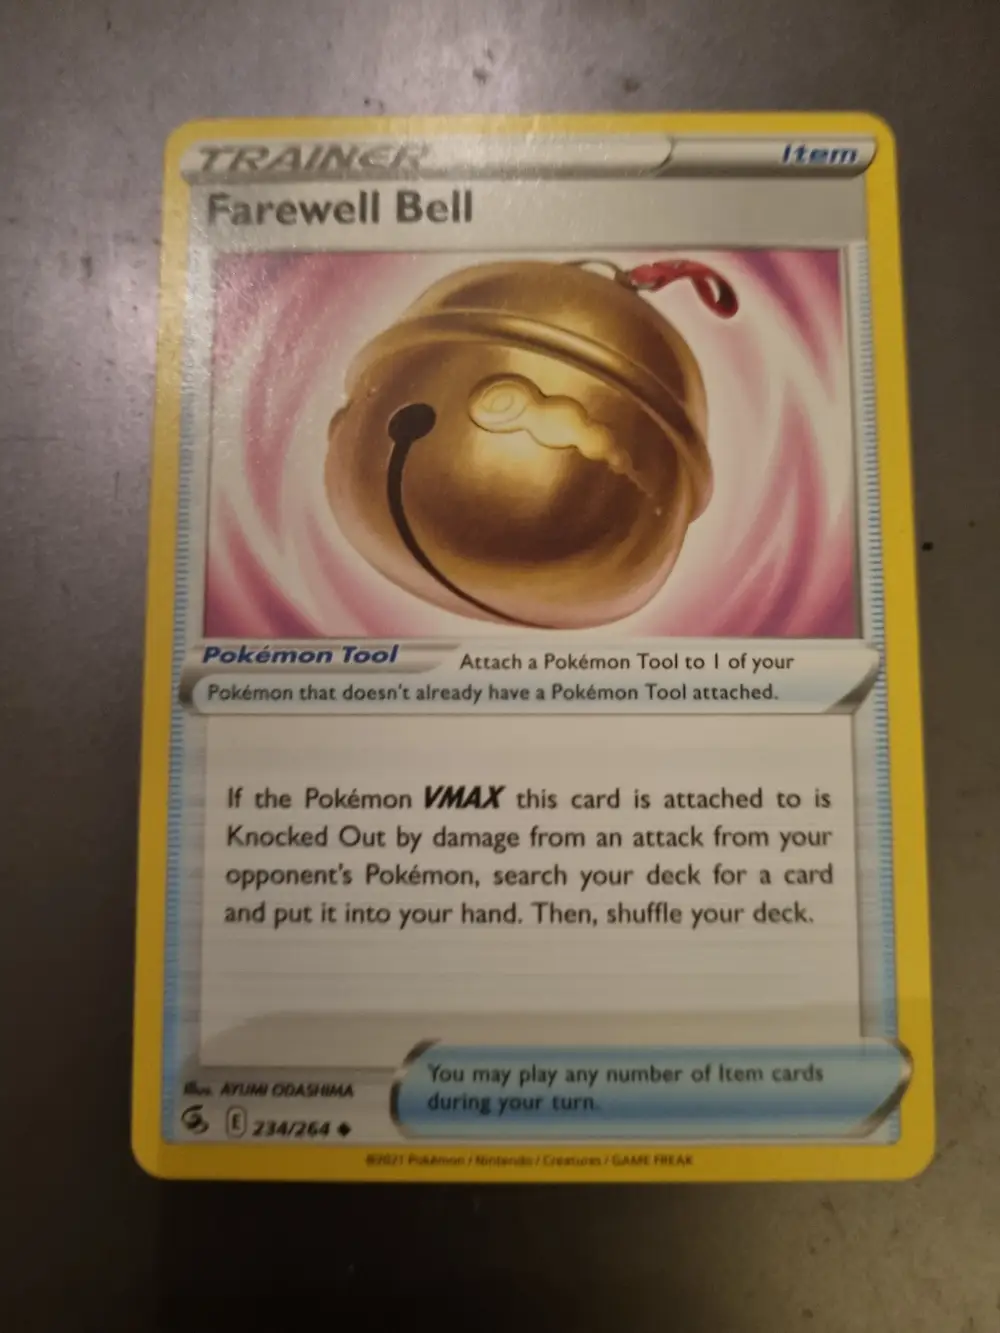 Pokémon Farewell Ball